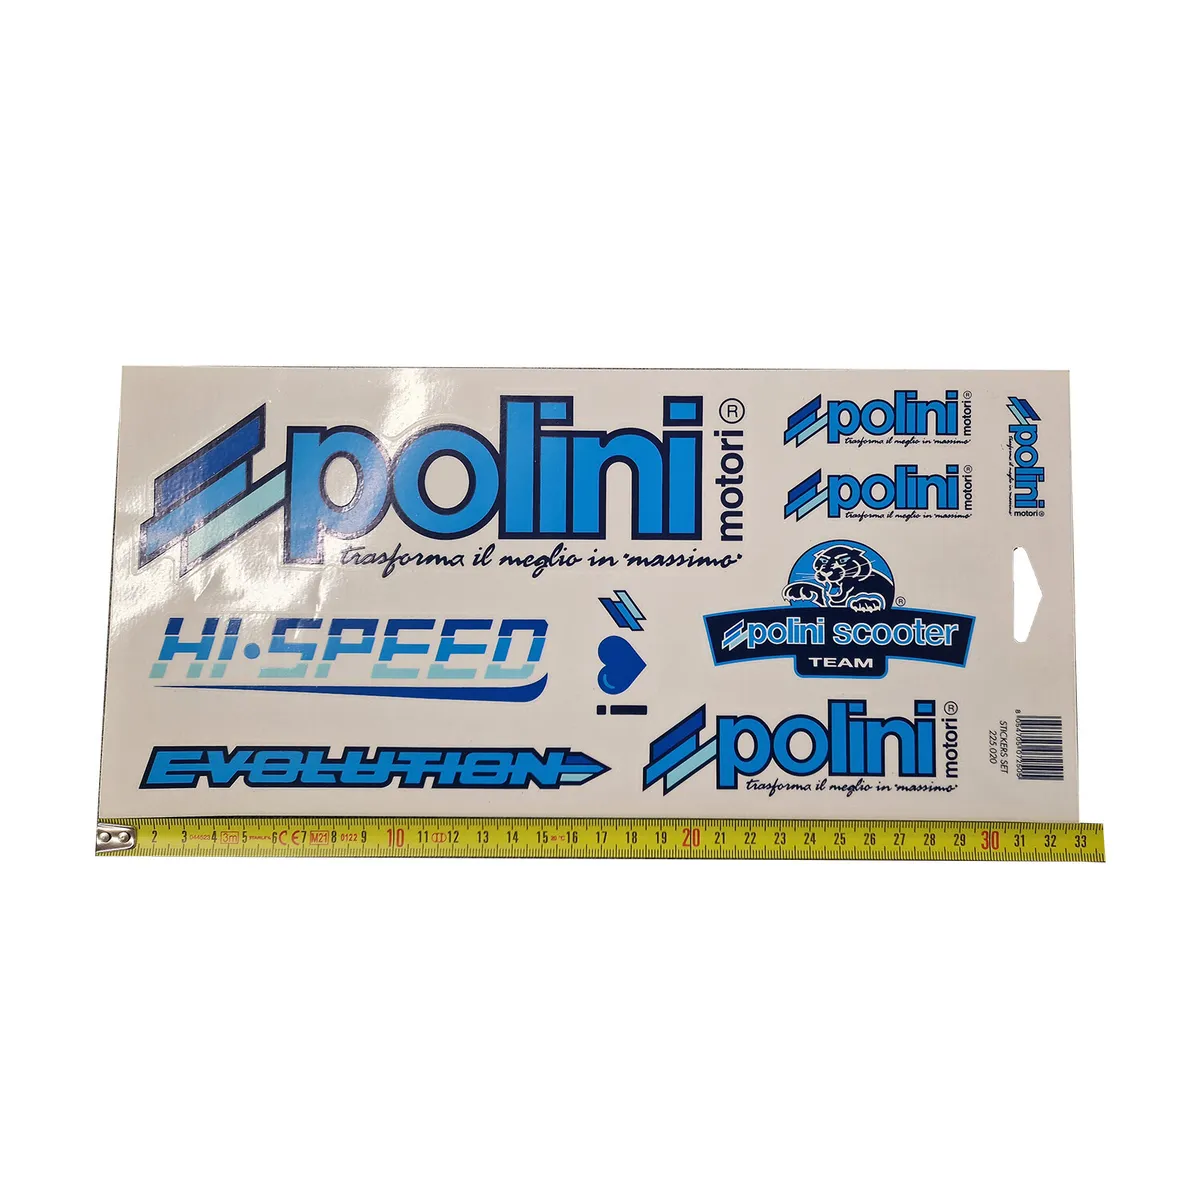 Planche d'autocollants/ stickers Polini Team 30x17cm prix : 4,99 € POLINI  225.020 P.13671 directement disponible chez MOTORKIT